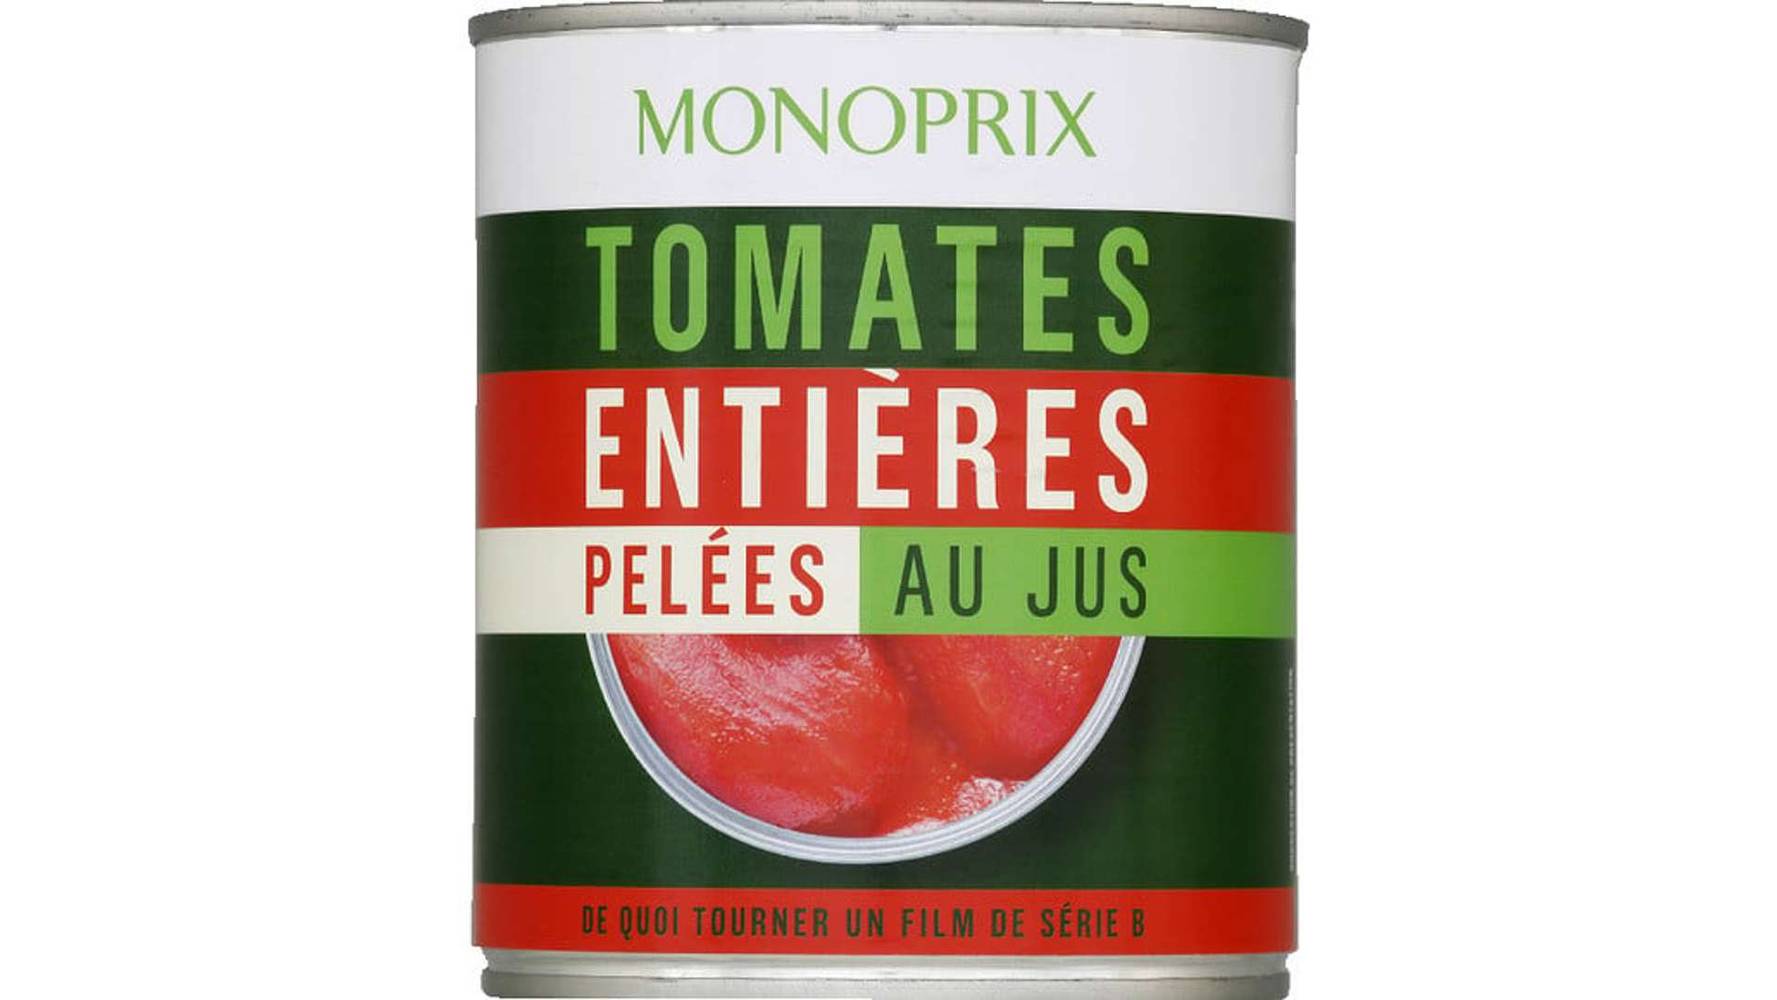 Monoprix Tomates entières pelées au jus La boîte de 476g net égoutté